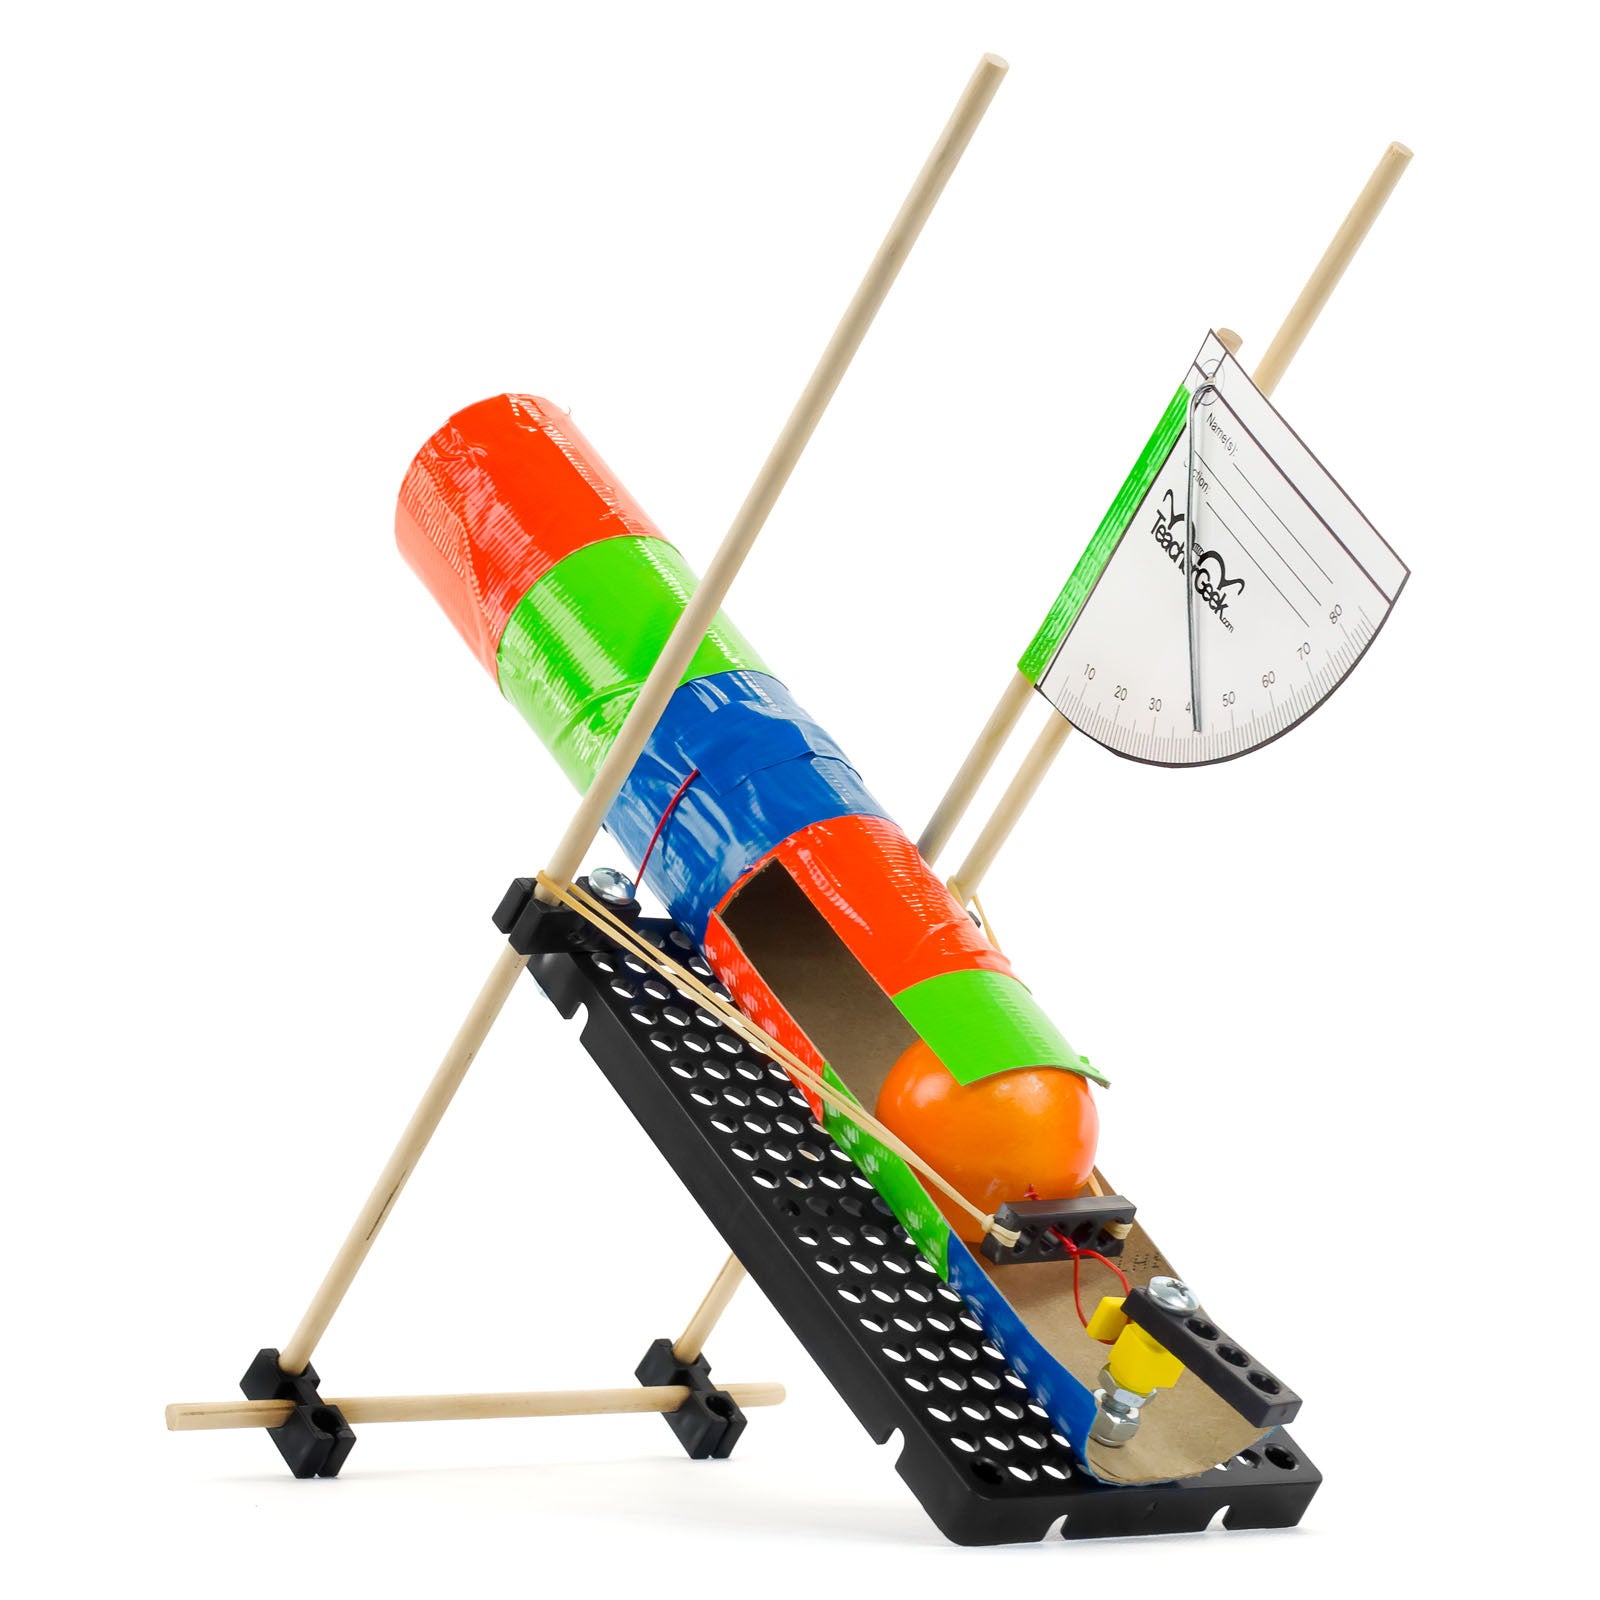 Ping-Pong Ball / Projectile Launcher Activity – TeacherGeek